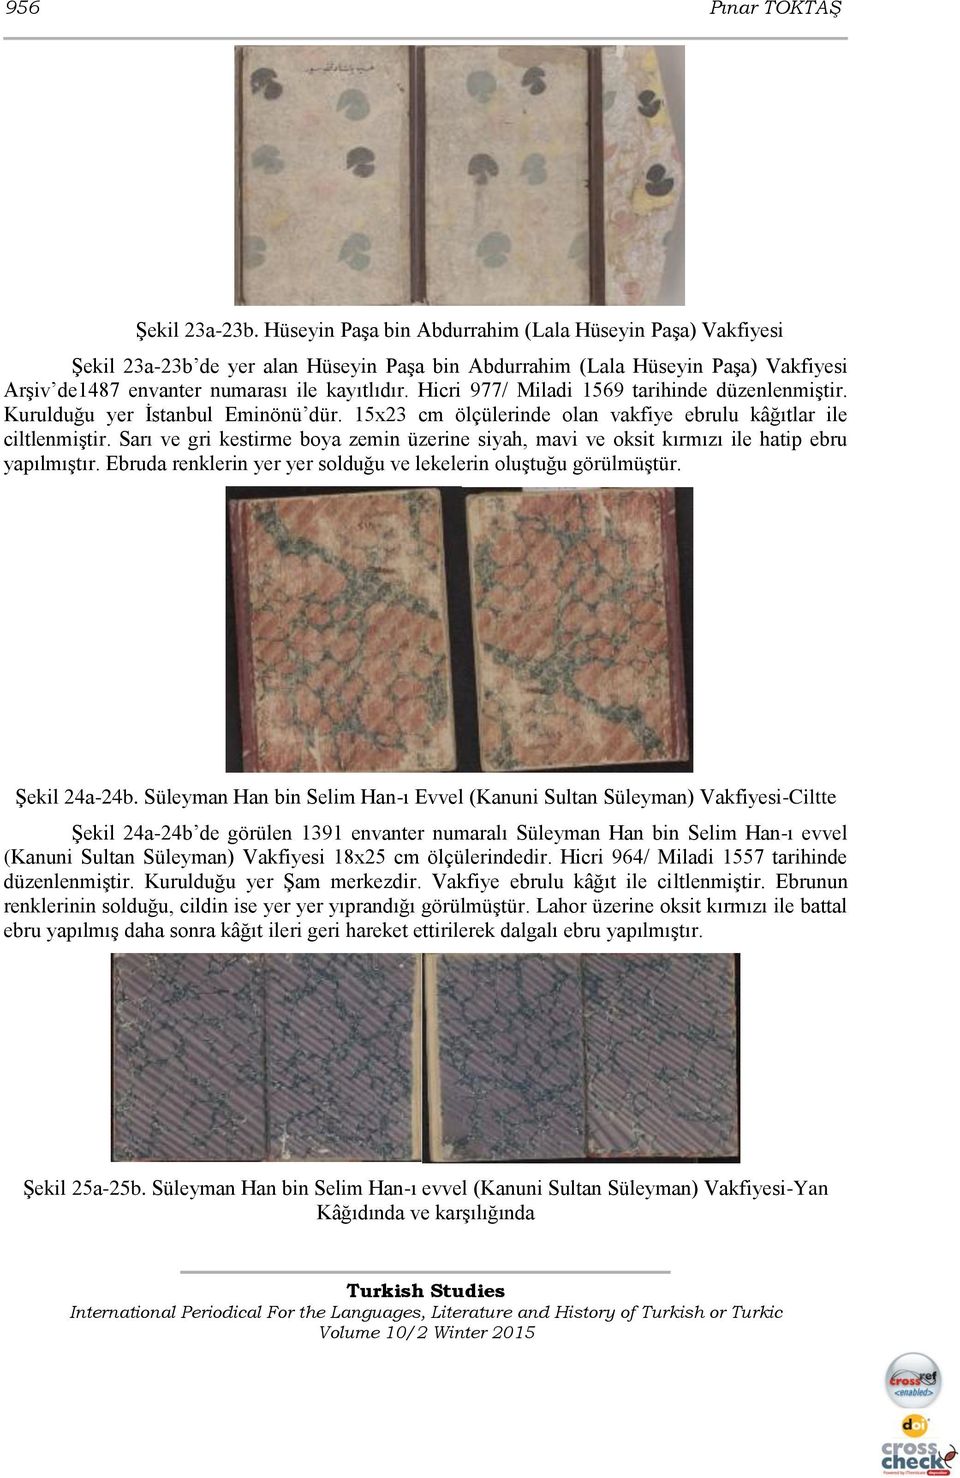 Hicri 977/ Miladi 1569 tarihinde düzenlenmiştir. Kurulduğu yer İstanbul Eminönü dür. 15x23 cm ölçülerinde olan vakfiye ebrulu kâğıtlar ile ciltlenmiştir.